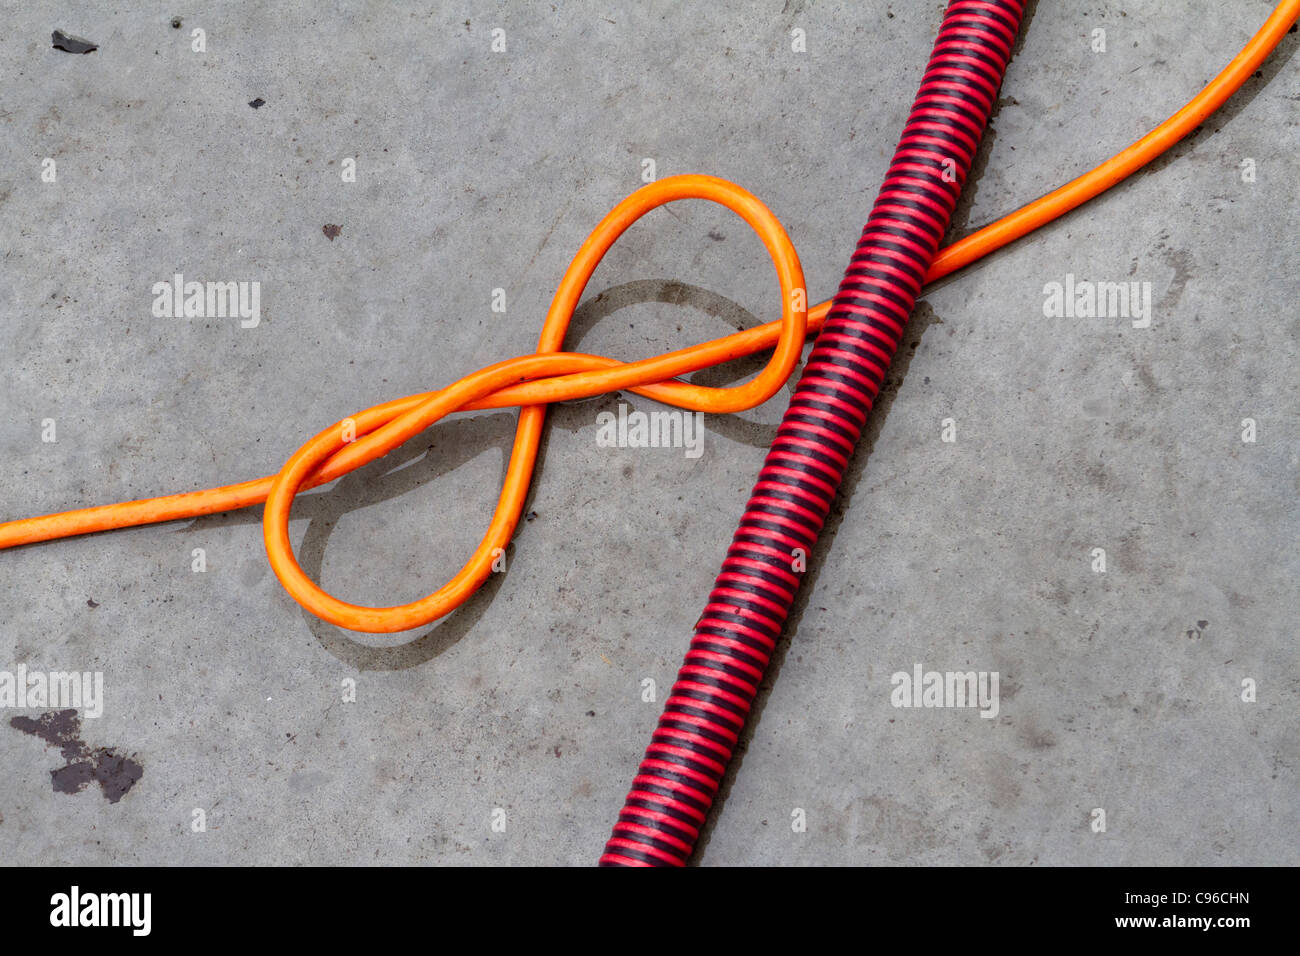 Eine elektrischen Flex mit einem Knoten drin von einem rot und schwarz durchzogen Orange gestreift Kunststoffschlauch oder conduit Stockfoto